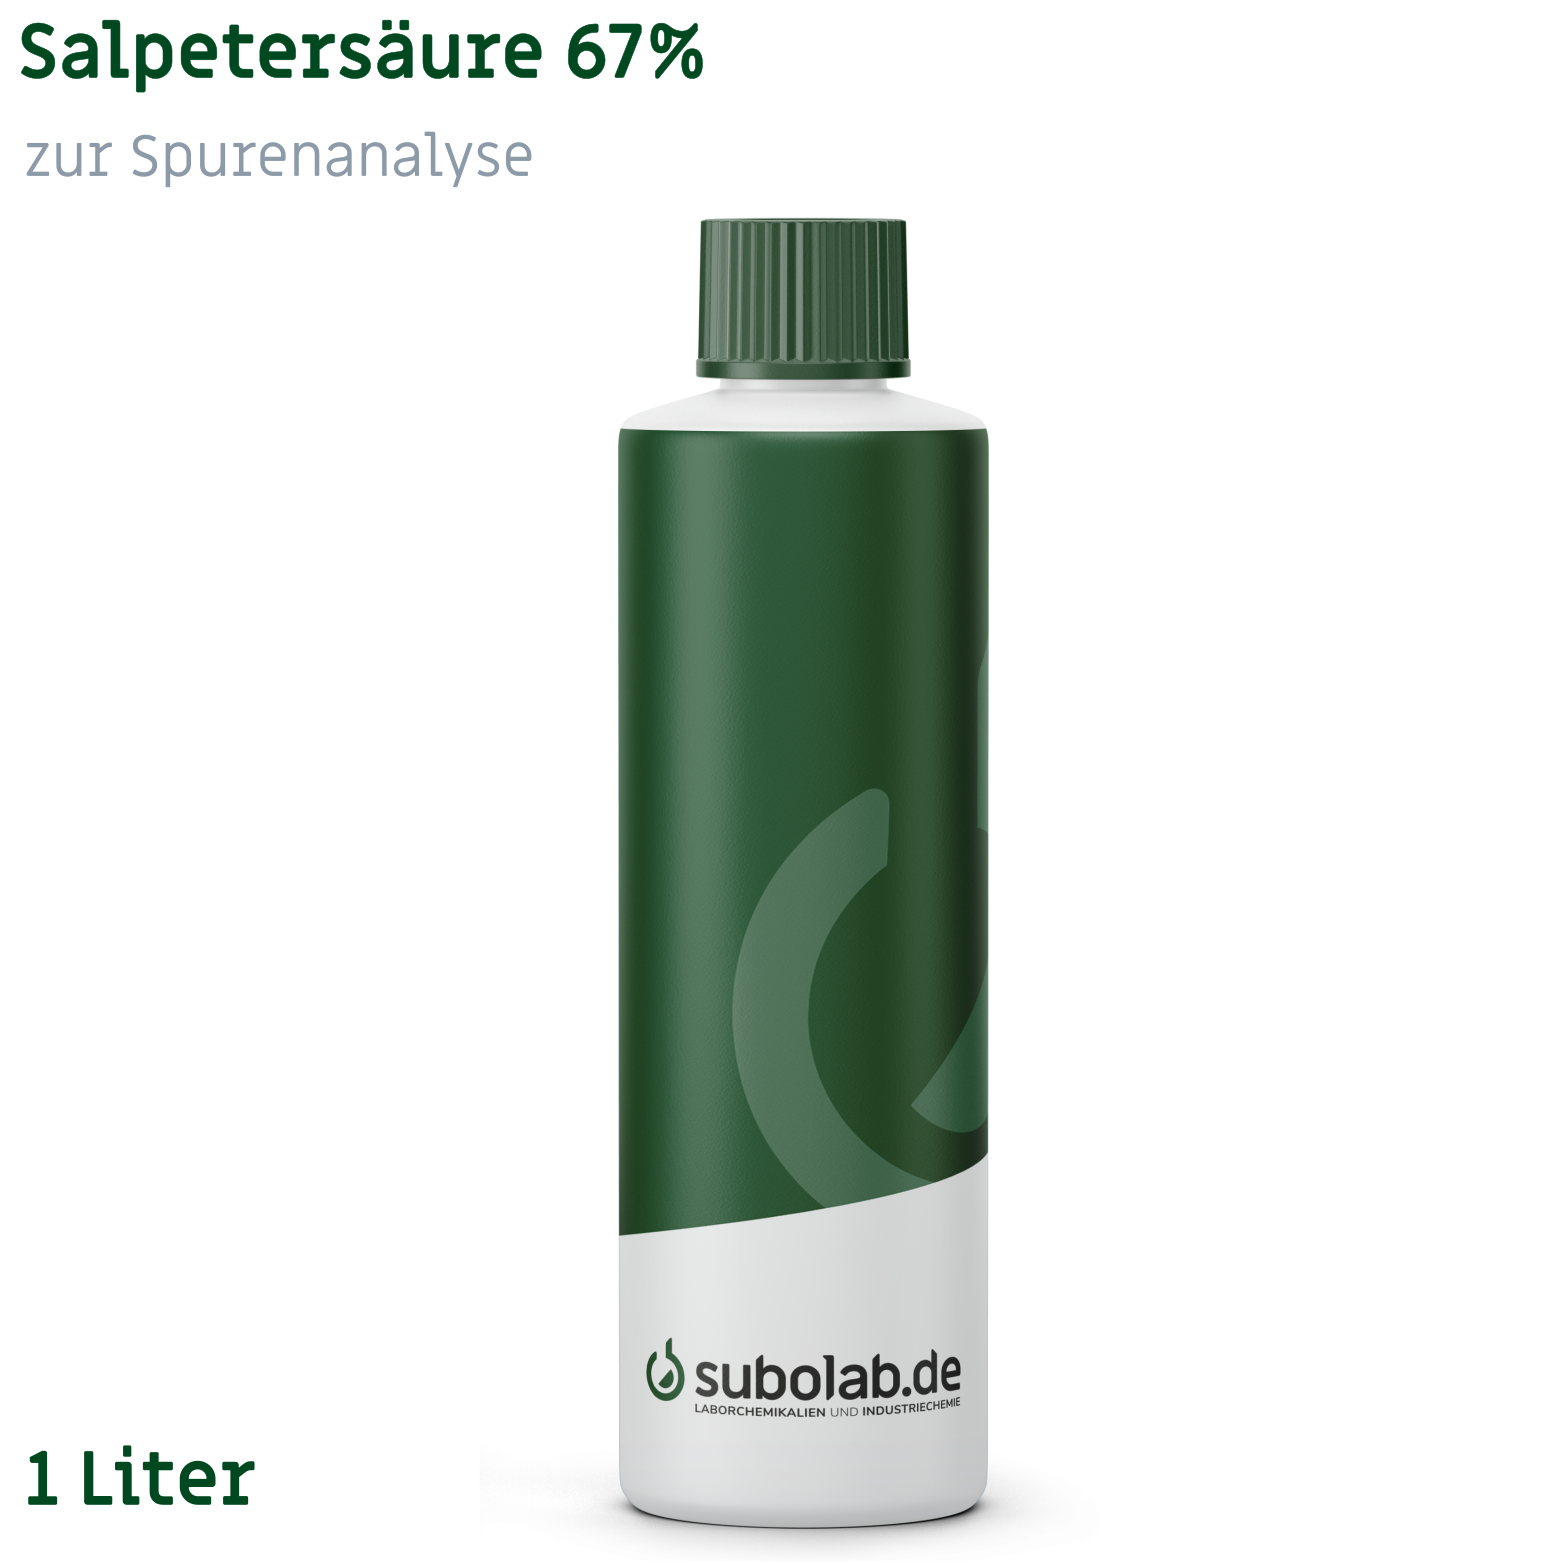 Bild von Salpetersäure 67% zur Spurenanalyse (1 Liter)